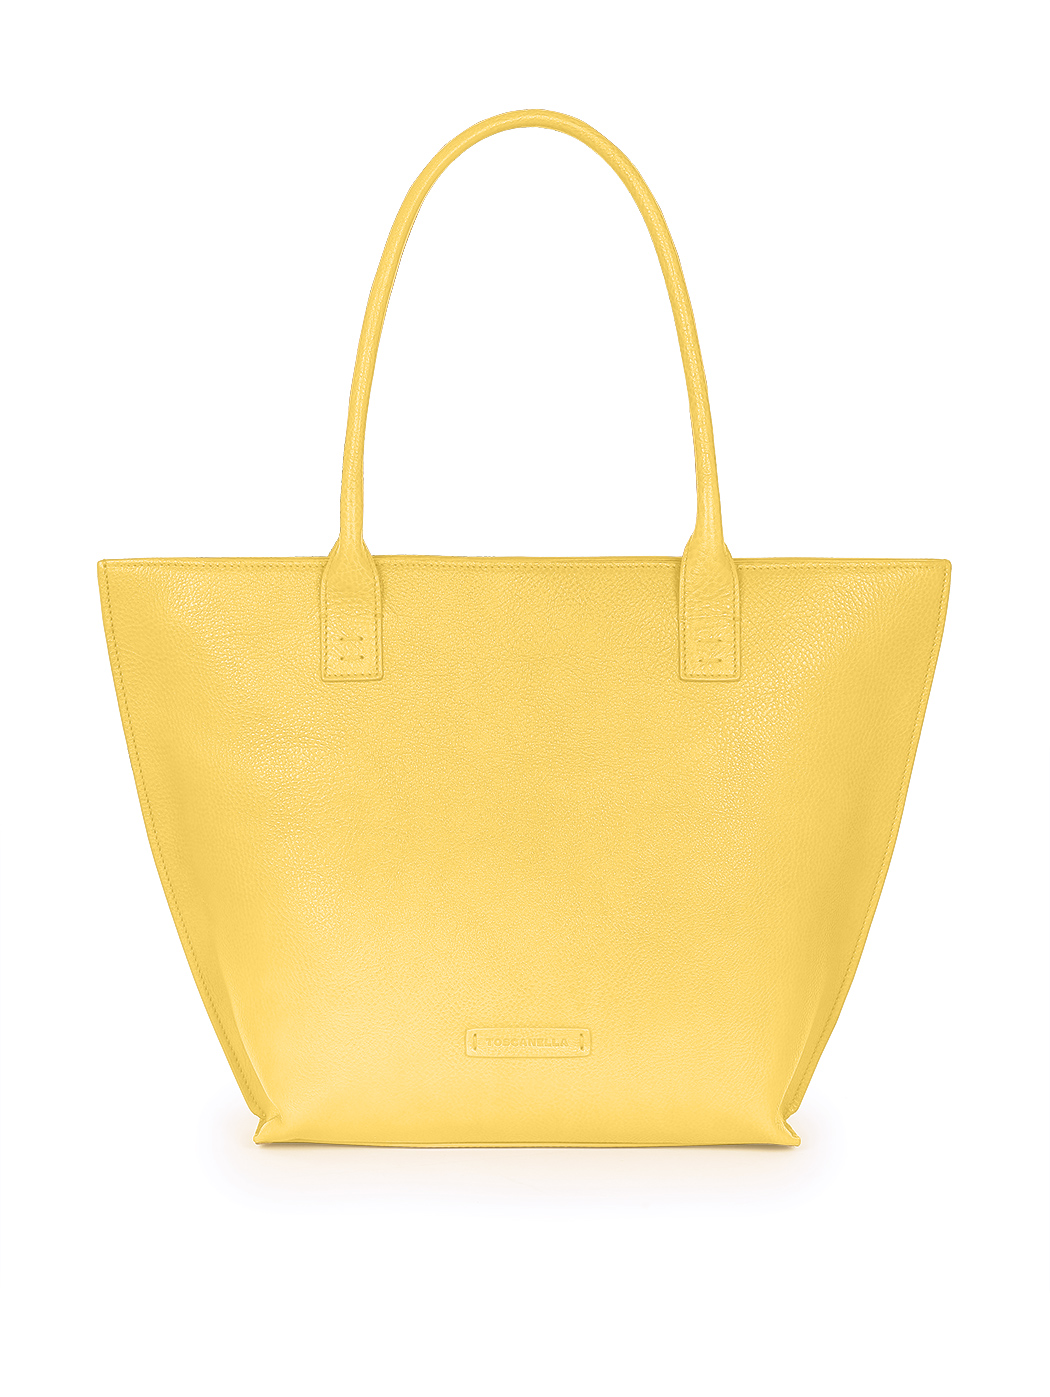 Bucket Zip Top Tote Handbag Yellow